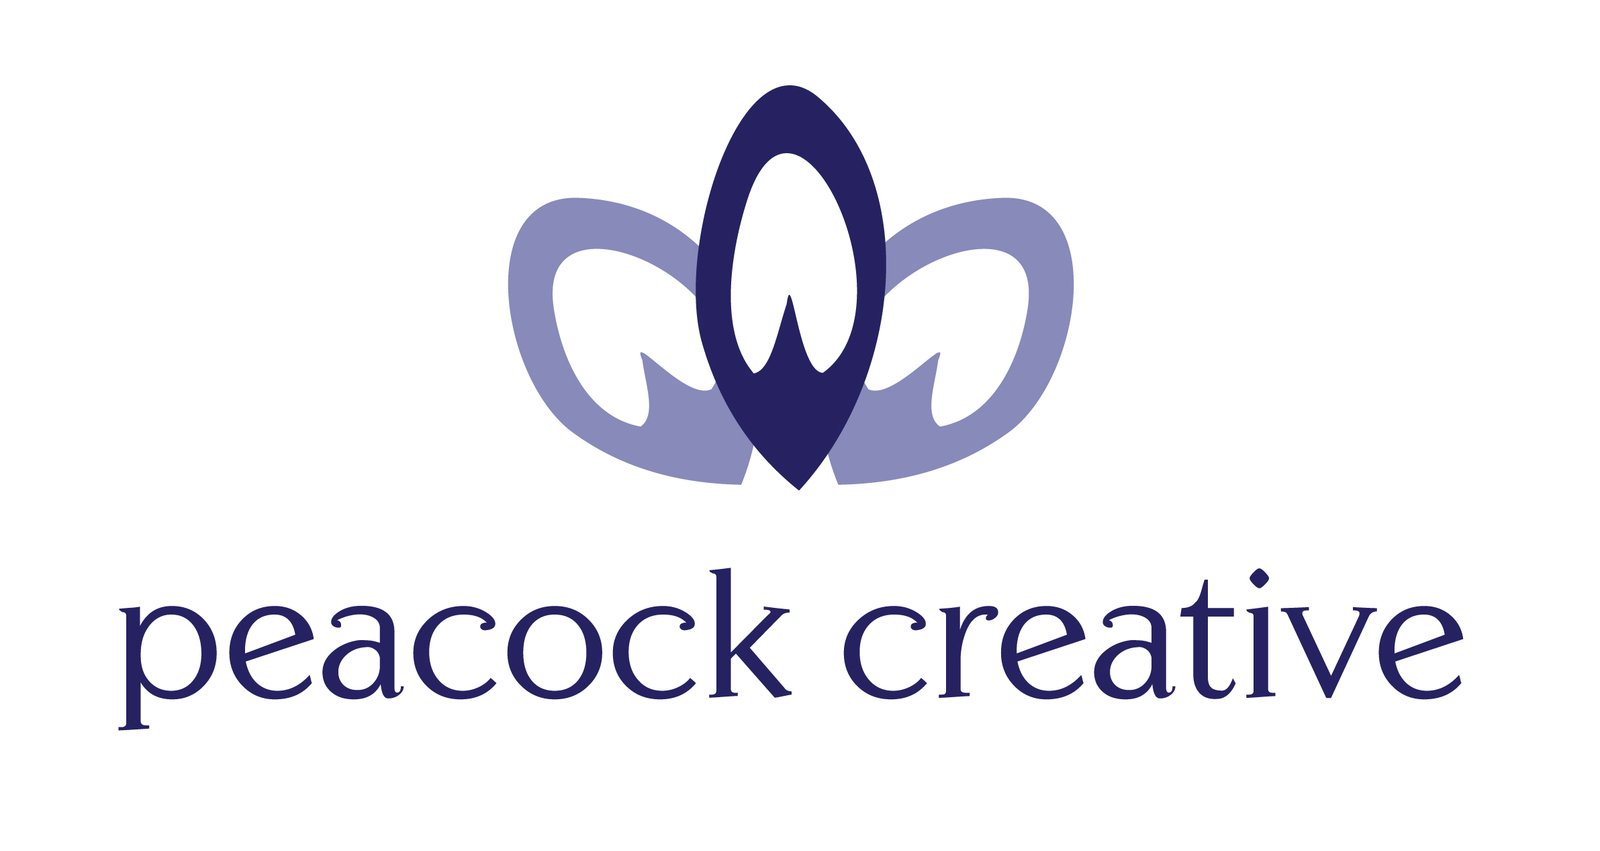 Peacock Creative Services